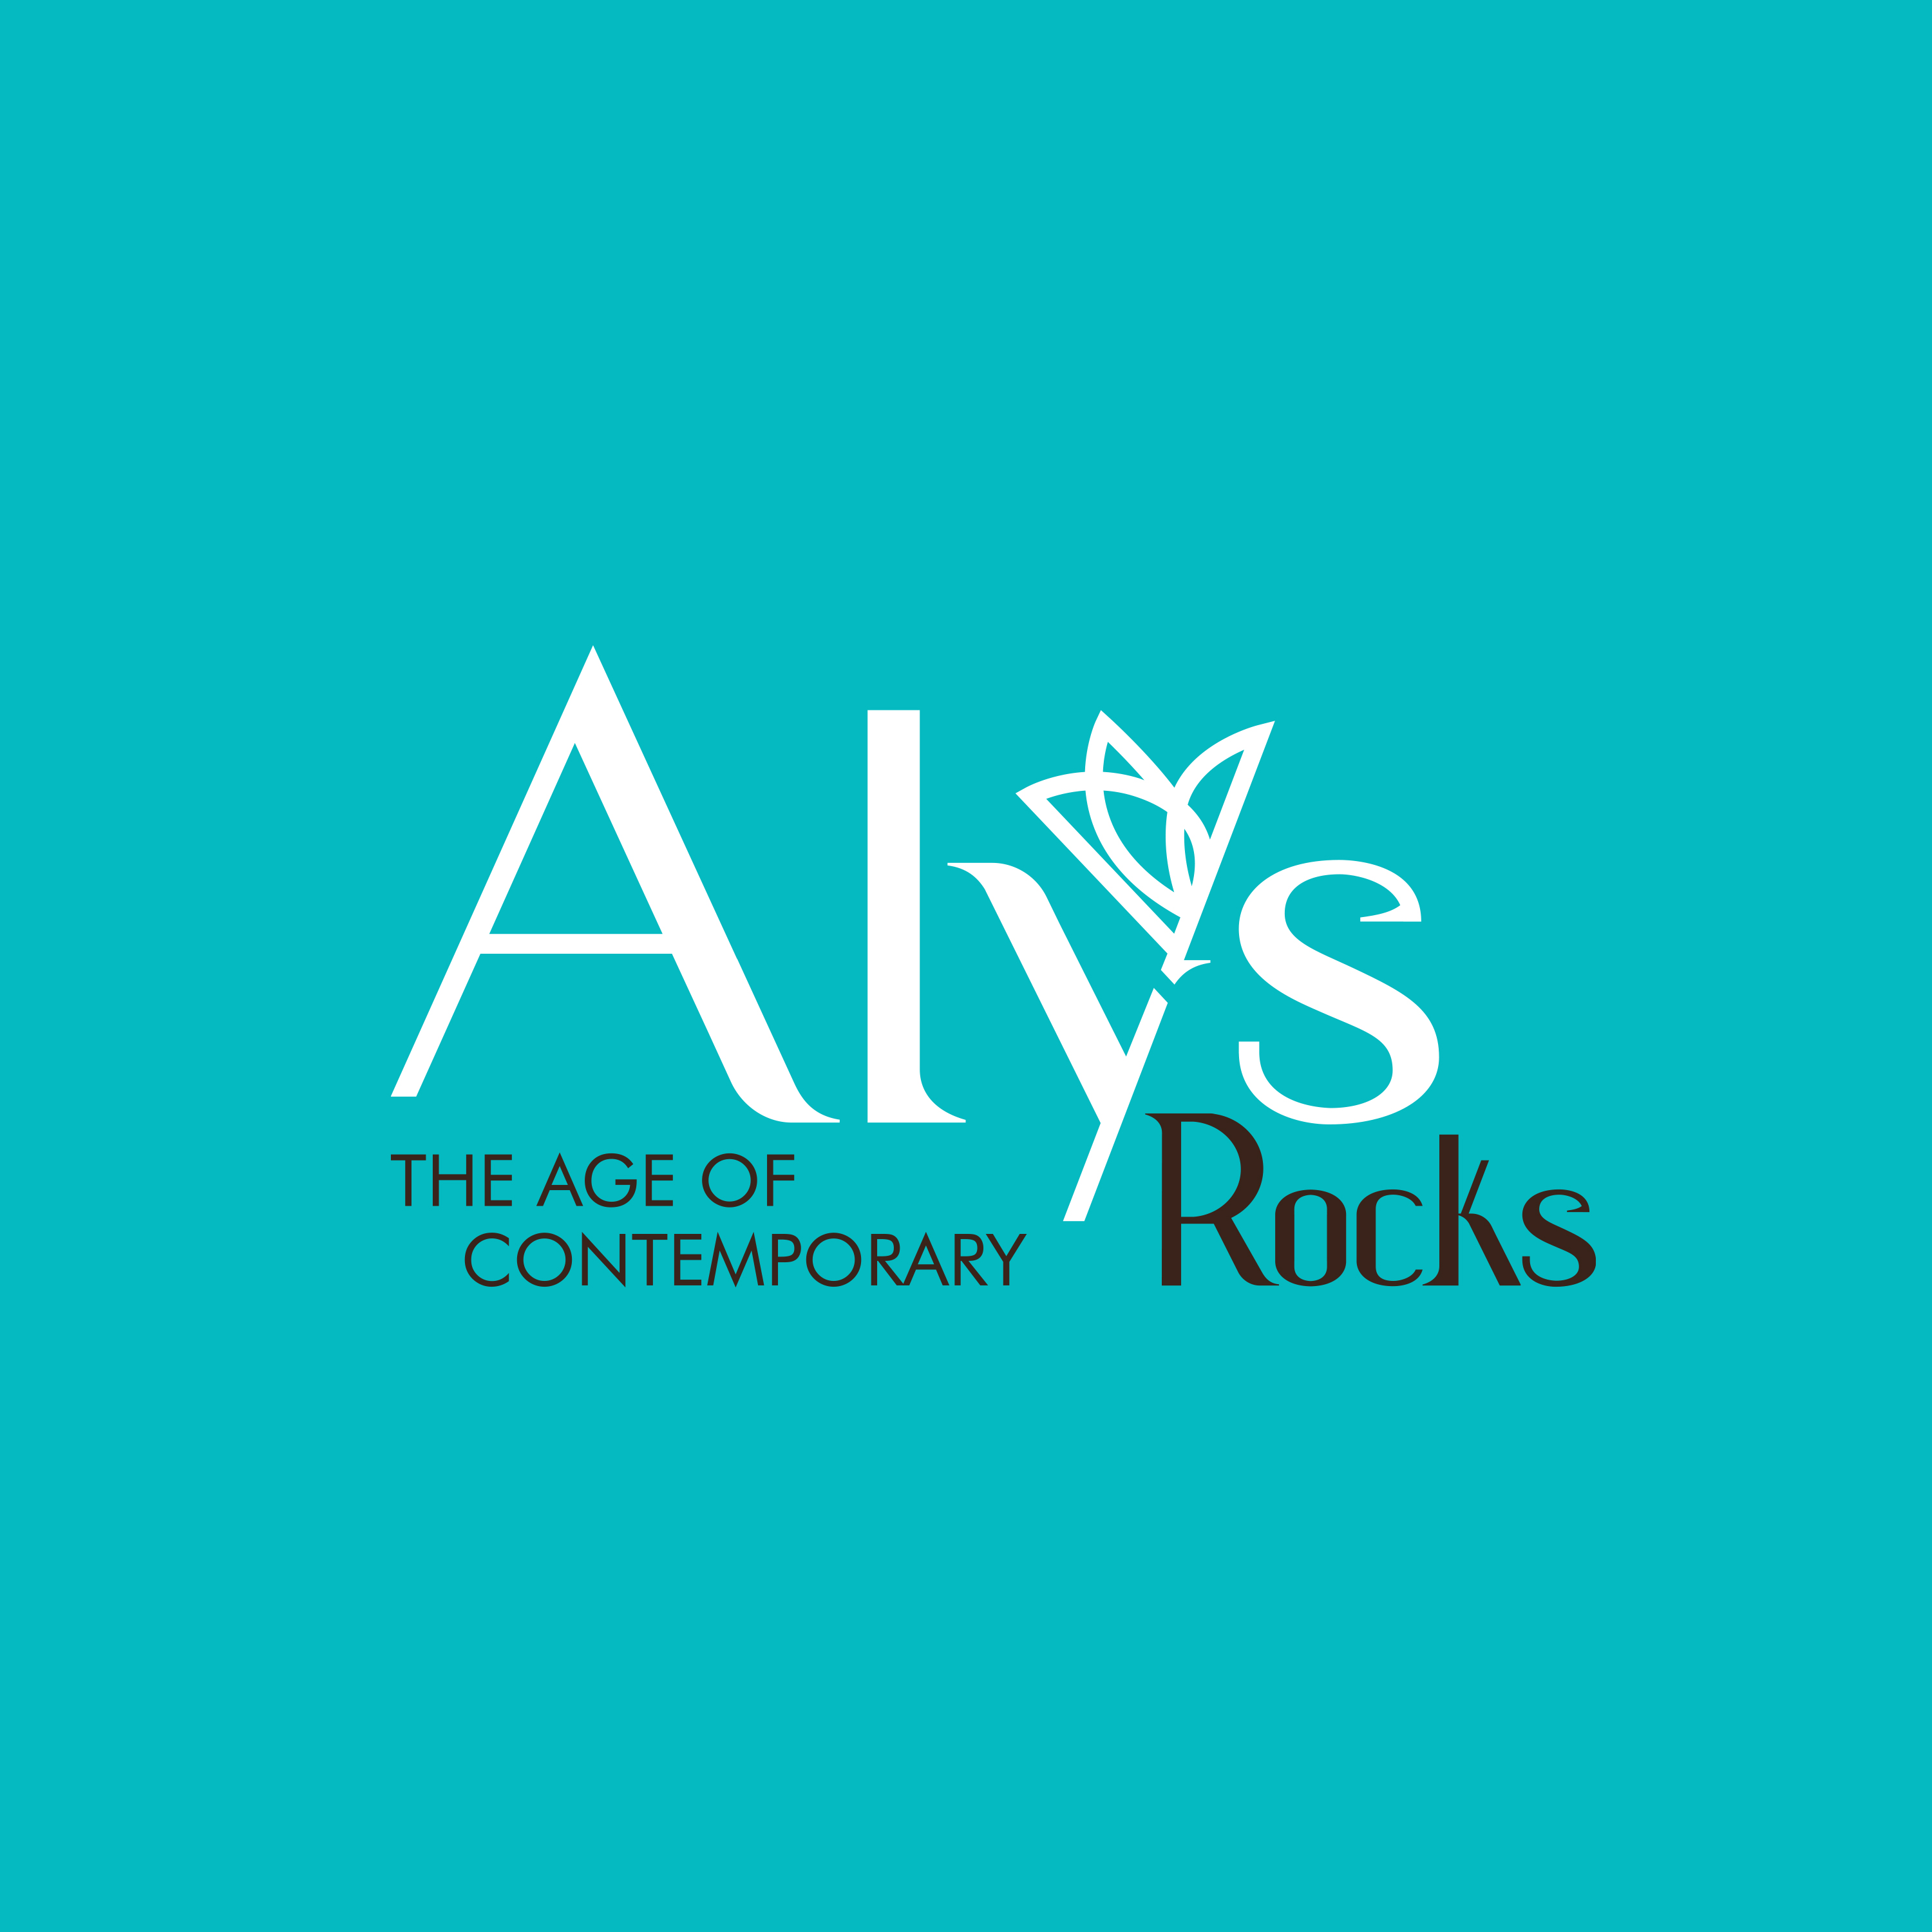 ALYS ROCKS